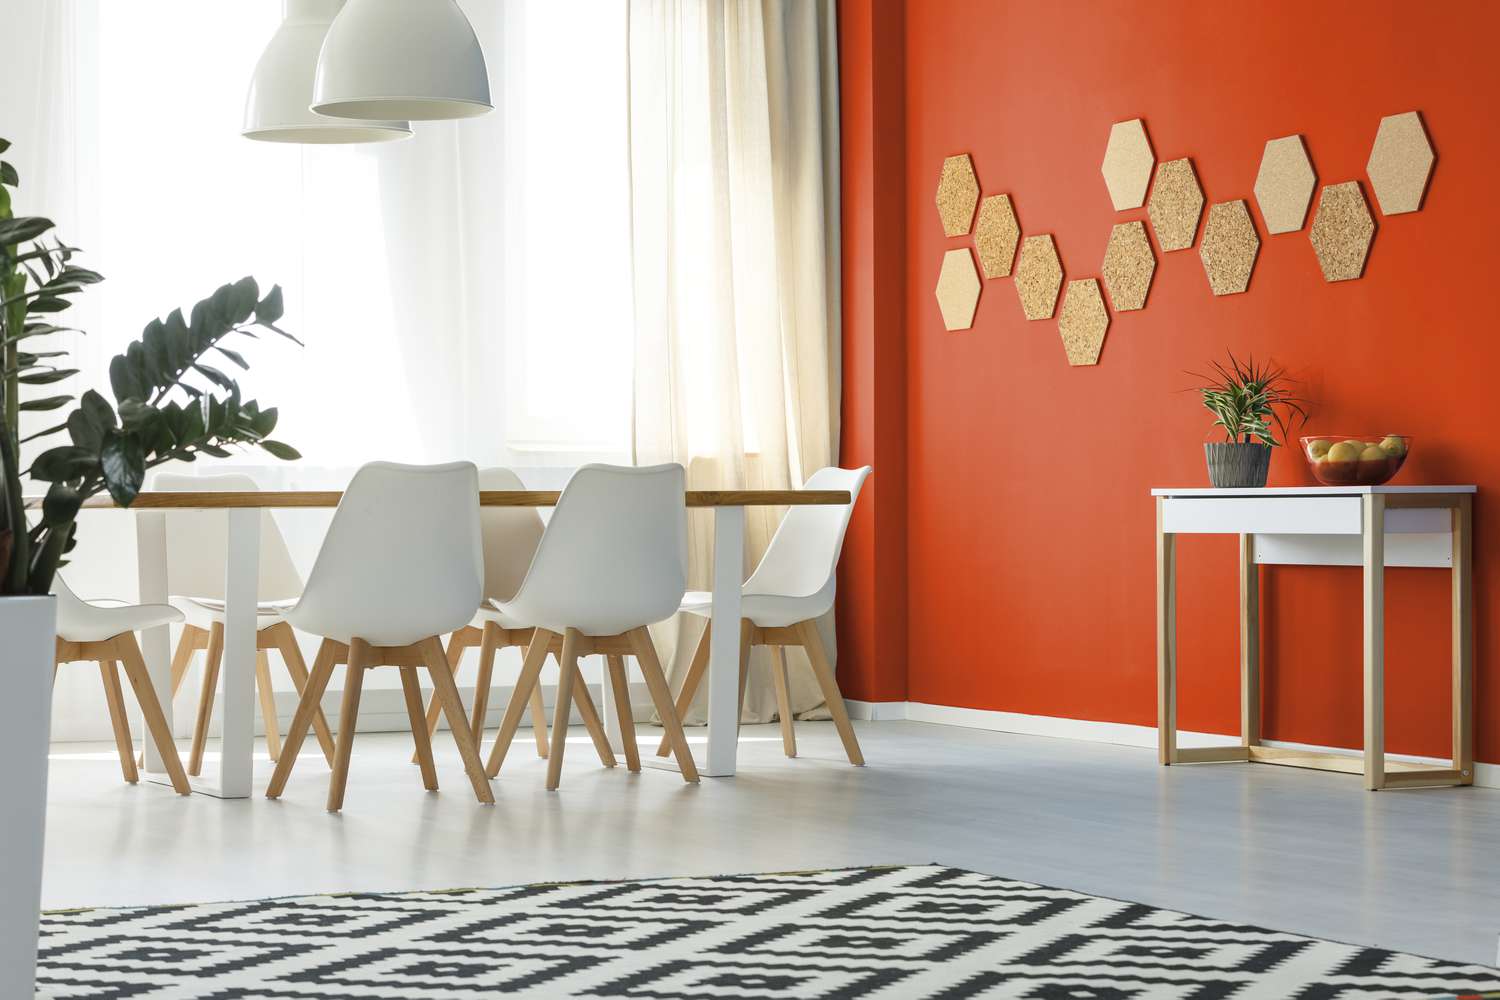 Salle à manger avec mur peint dans une couleur orange vif